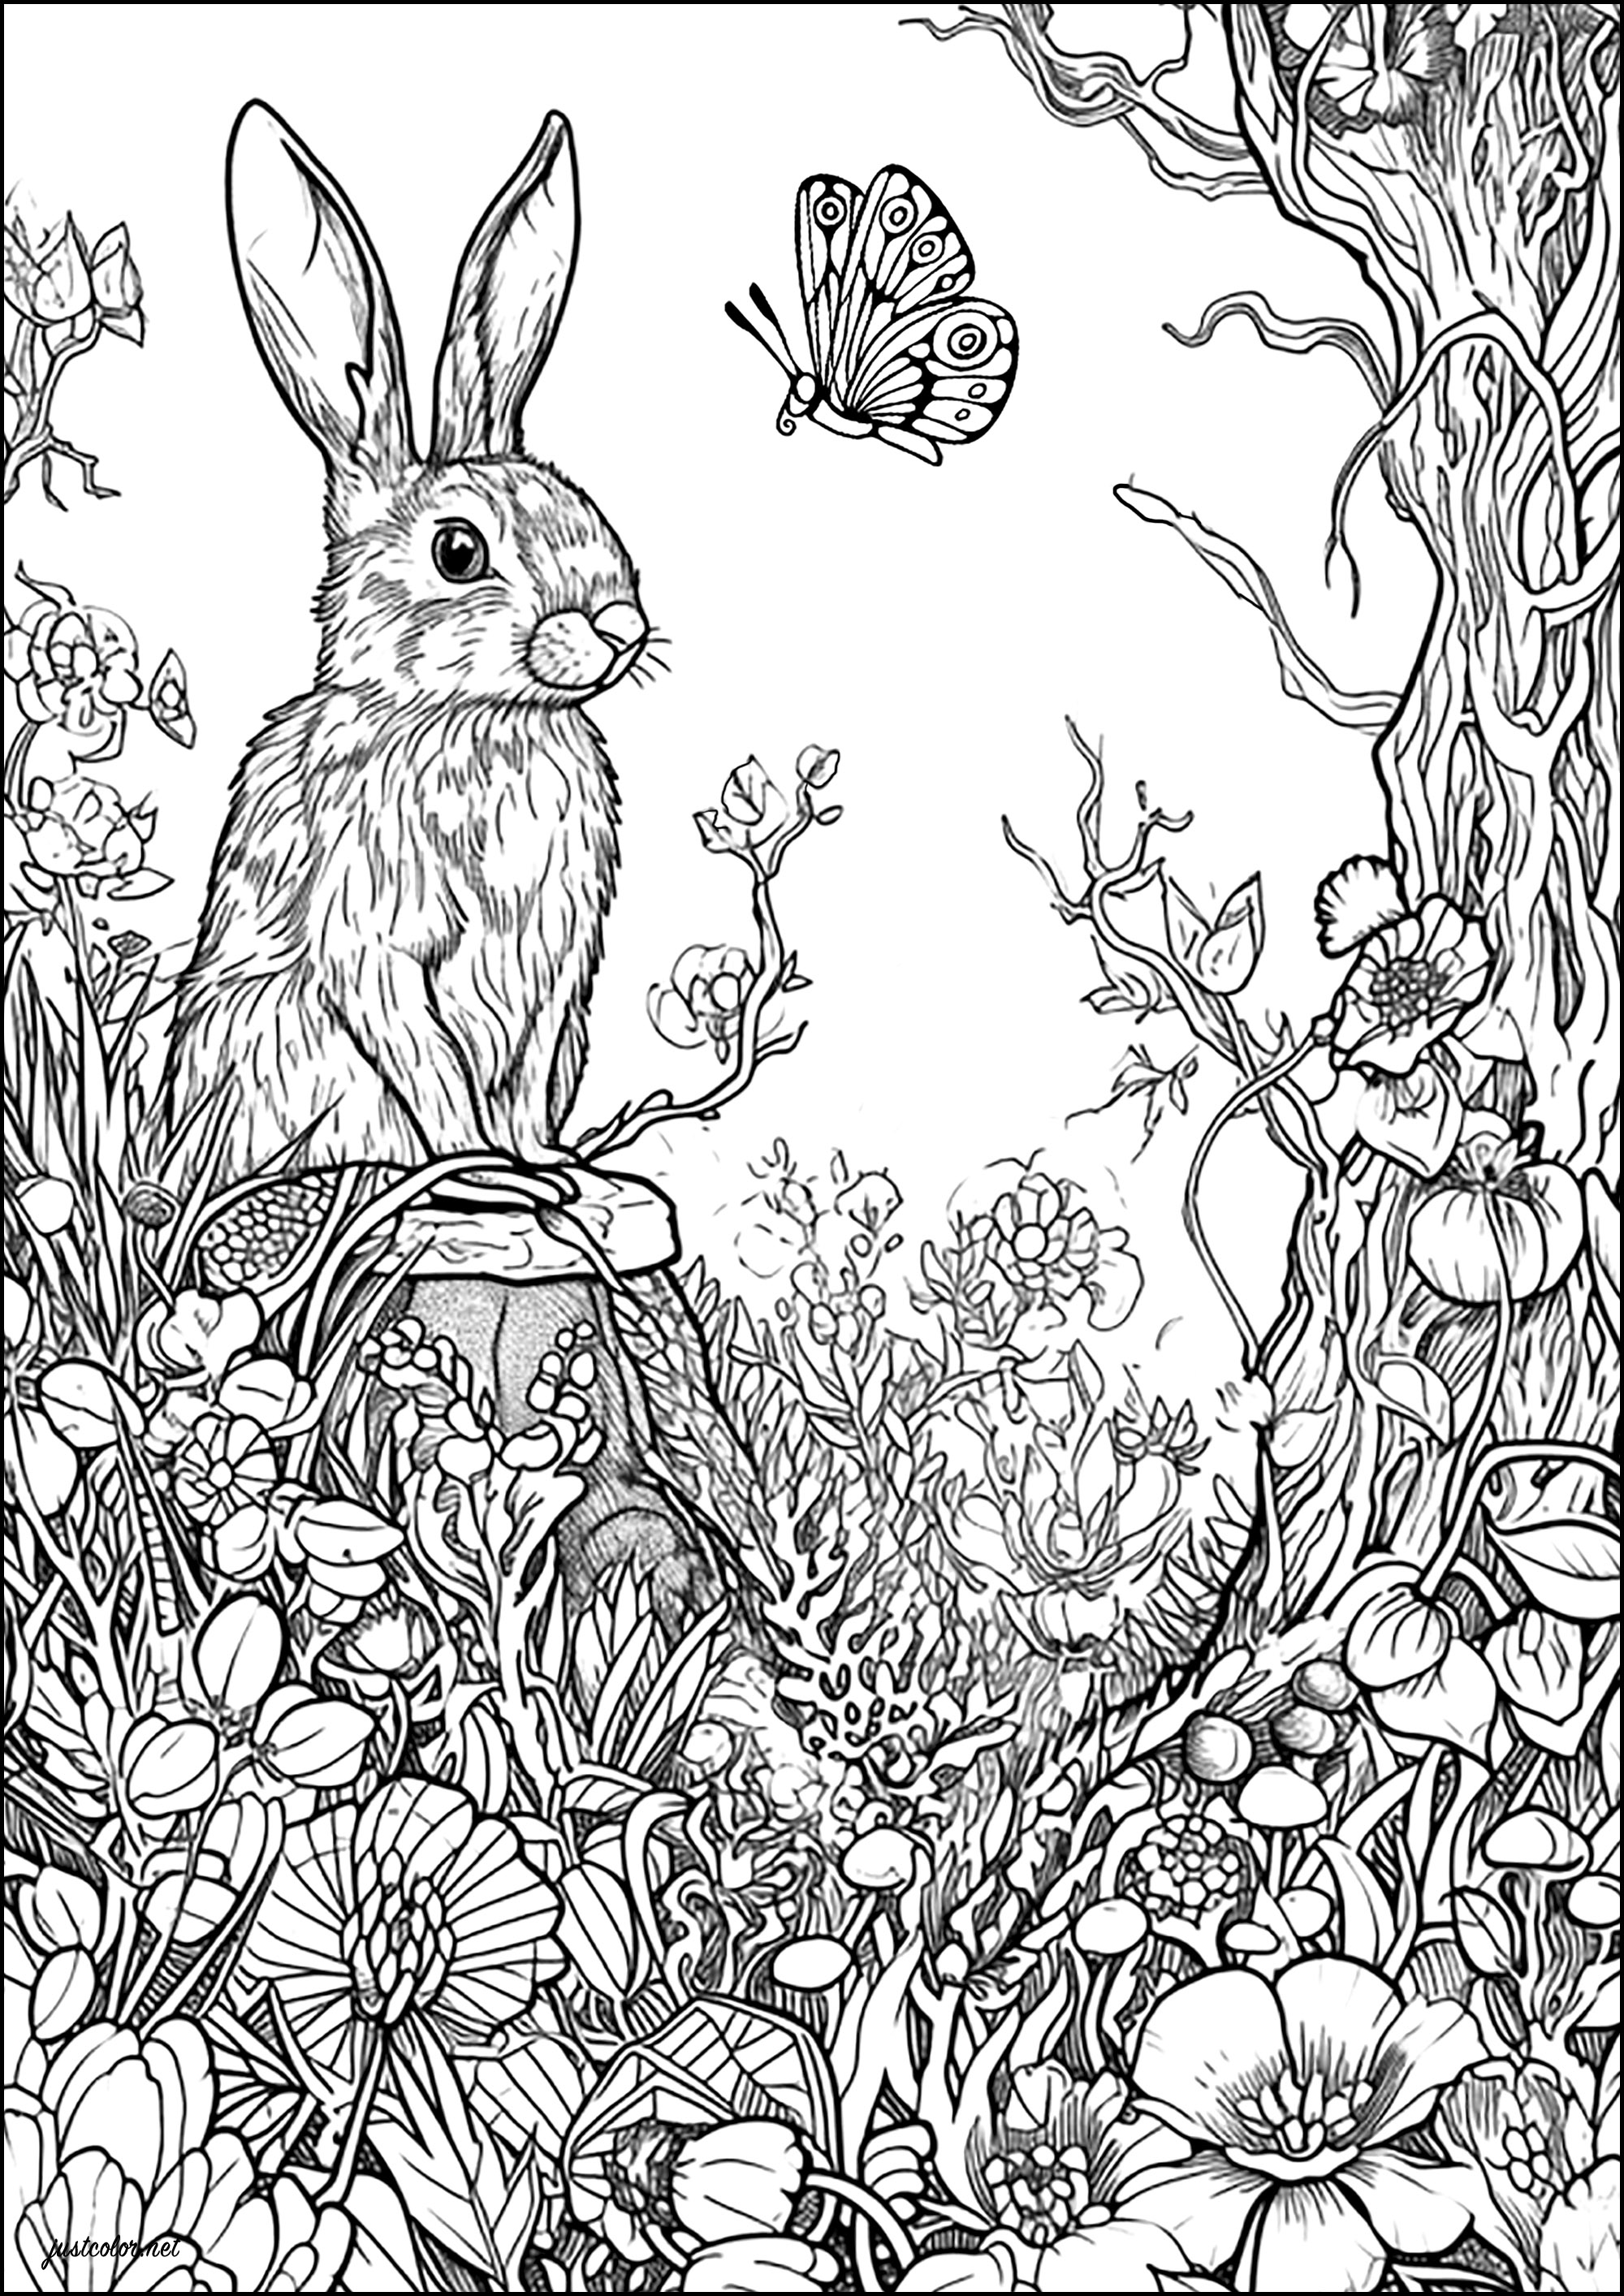 Il coniglio e la farfalla. Colorate questo bellissimo coniglio e la farfalla con cui sembra conversare, oltre ai tanti fiori che li circondano in questa foresta incantata.